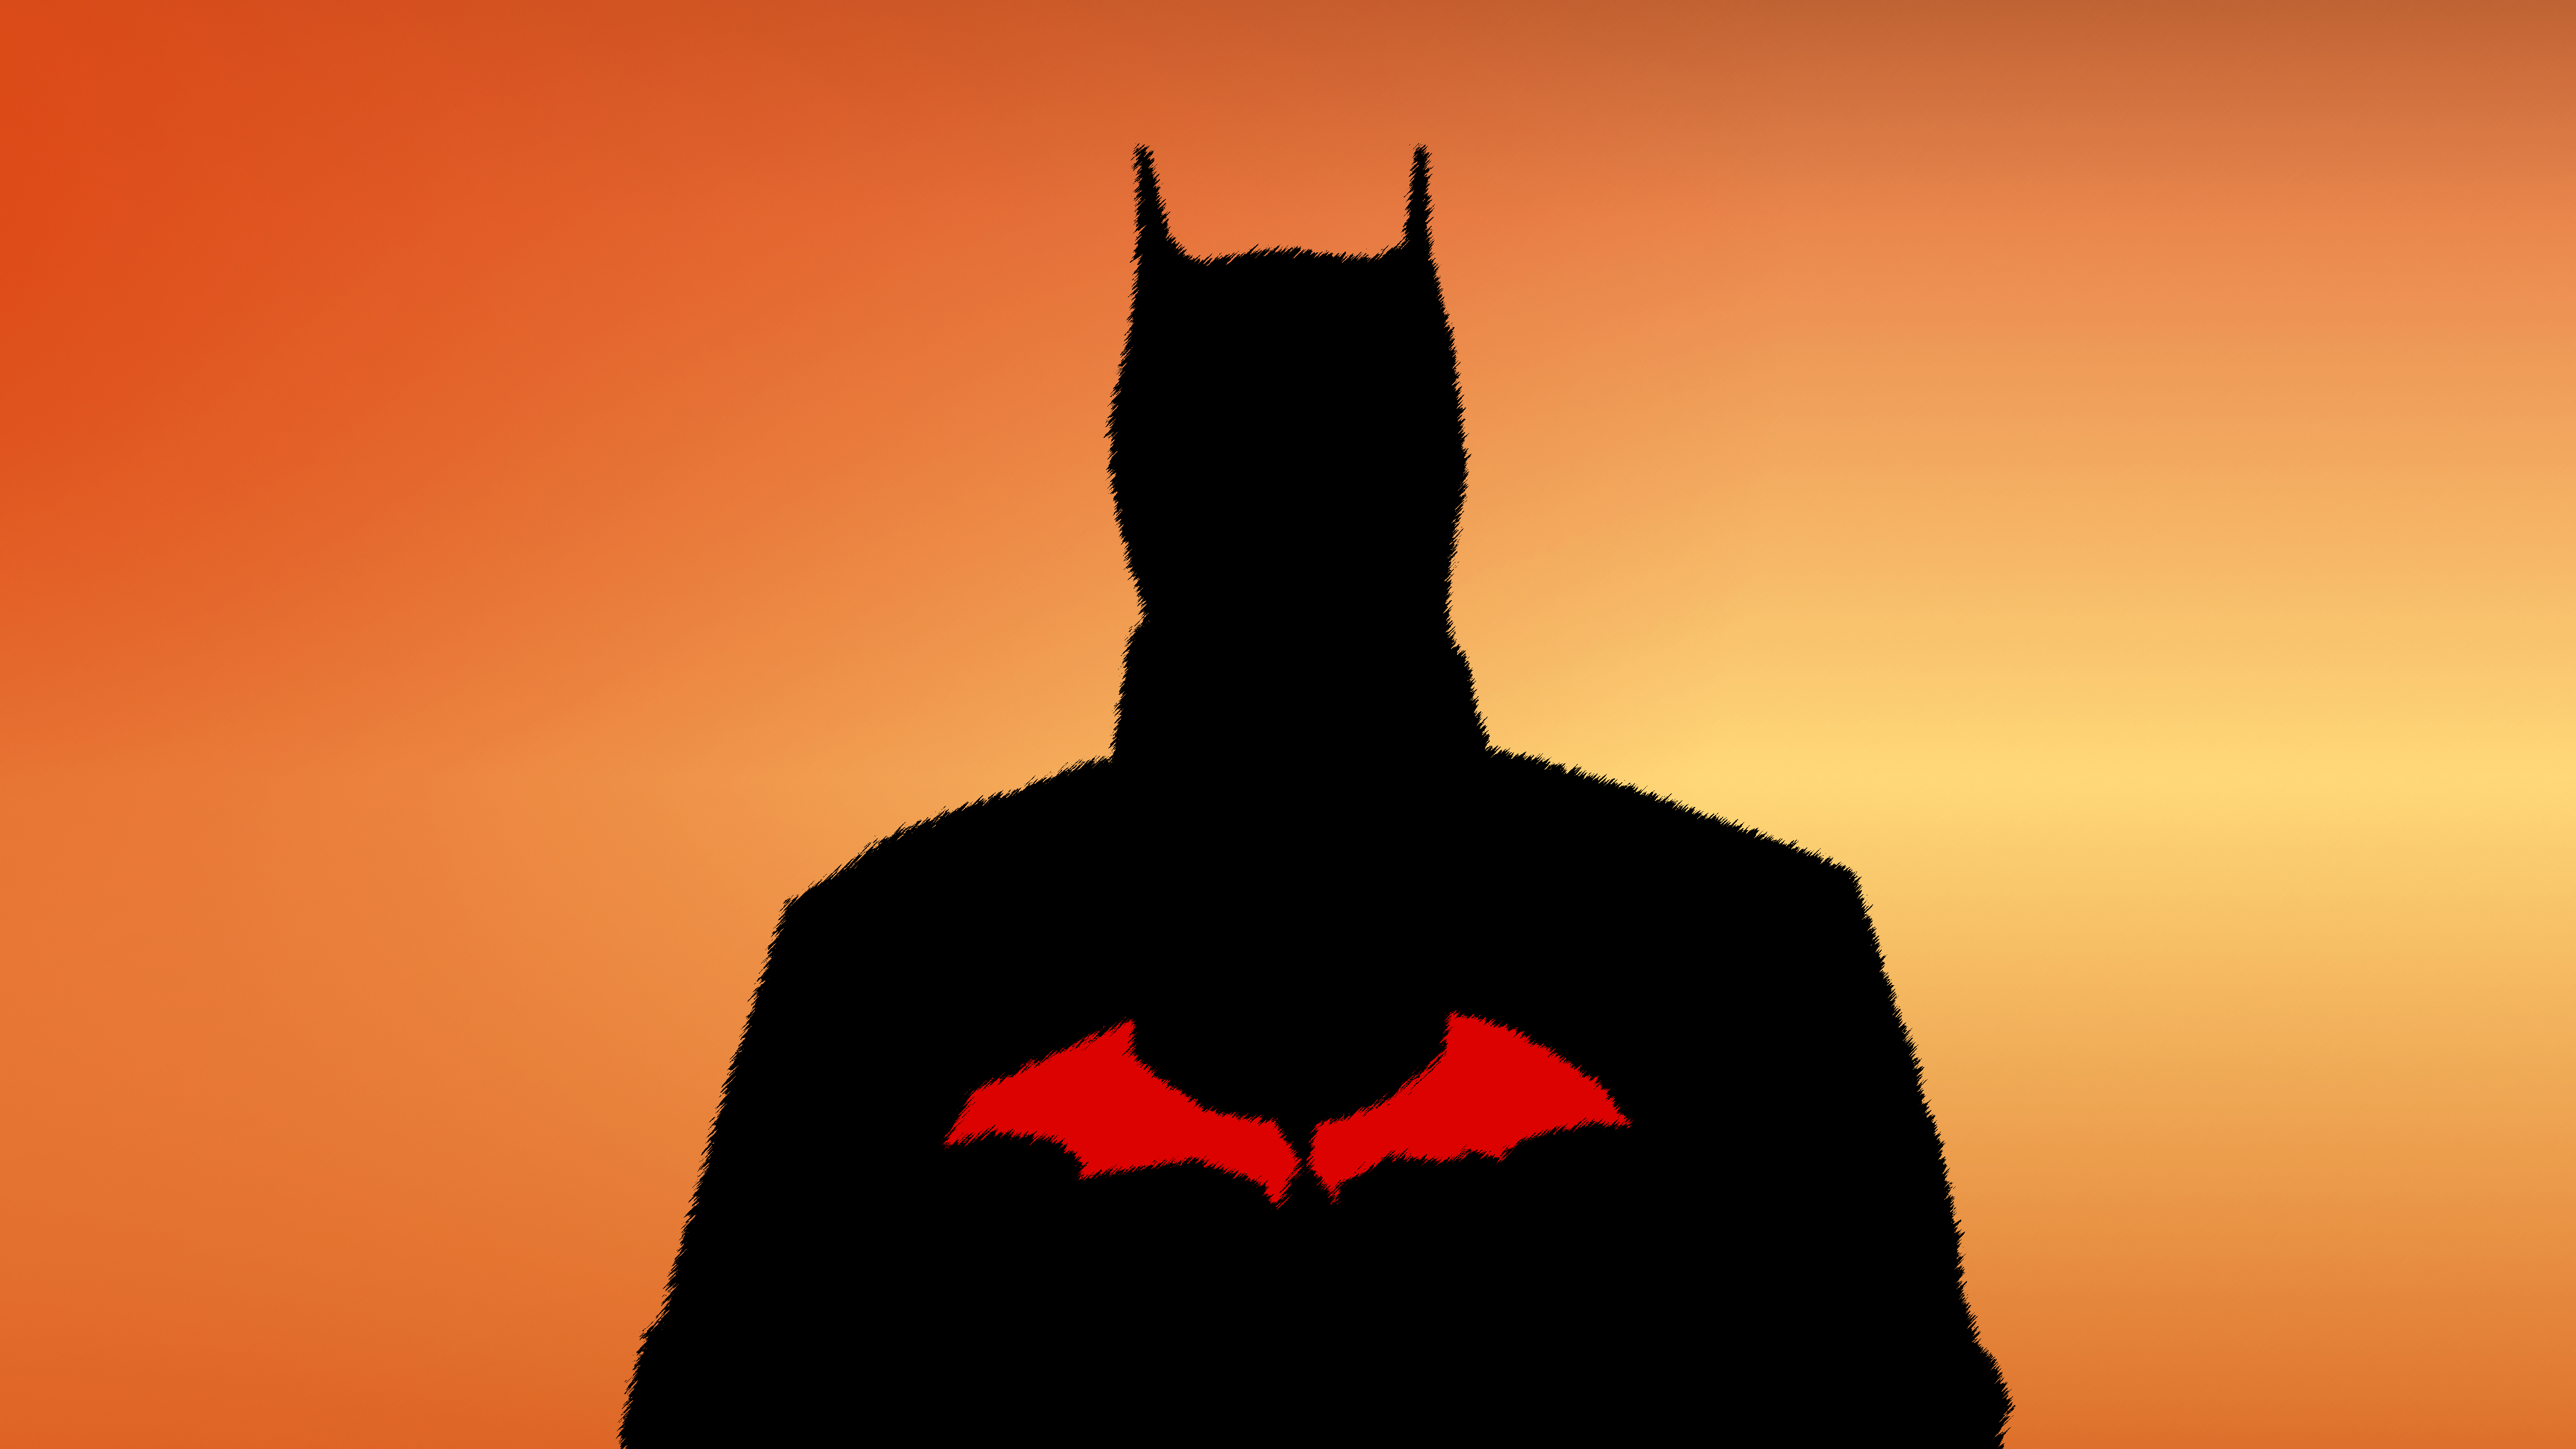 Batman Wallpaper 4K, DC Superheroes, Graphics CGI, #8501